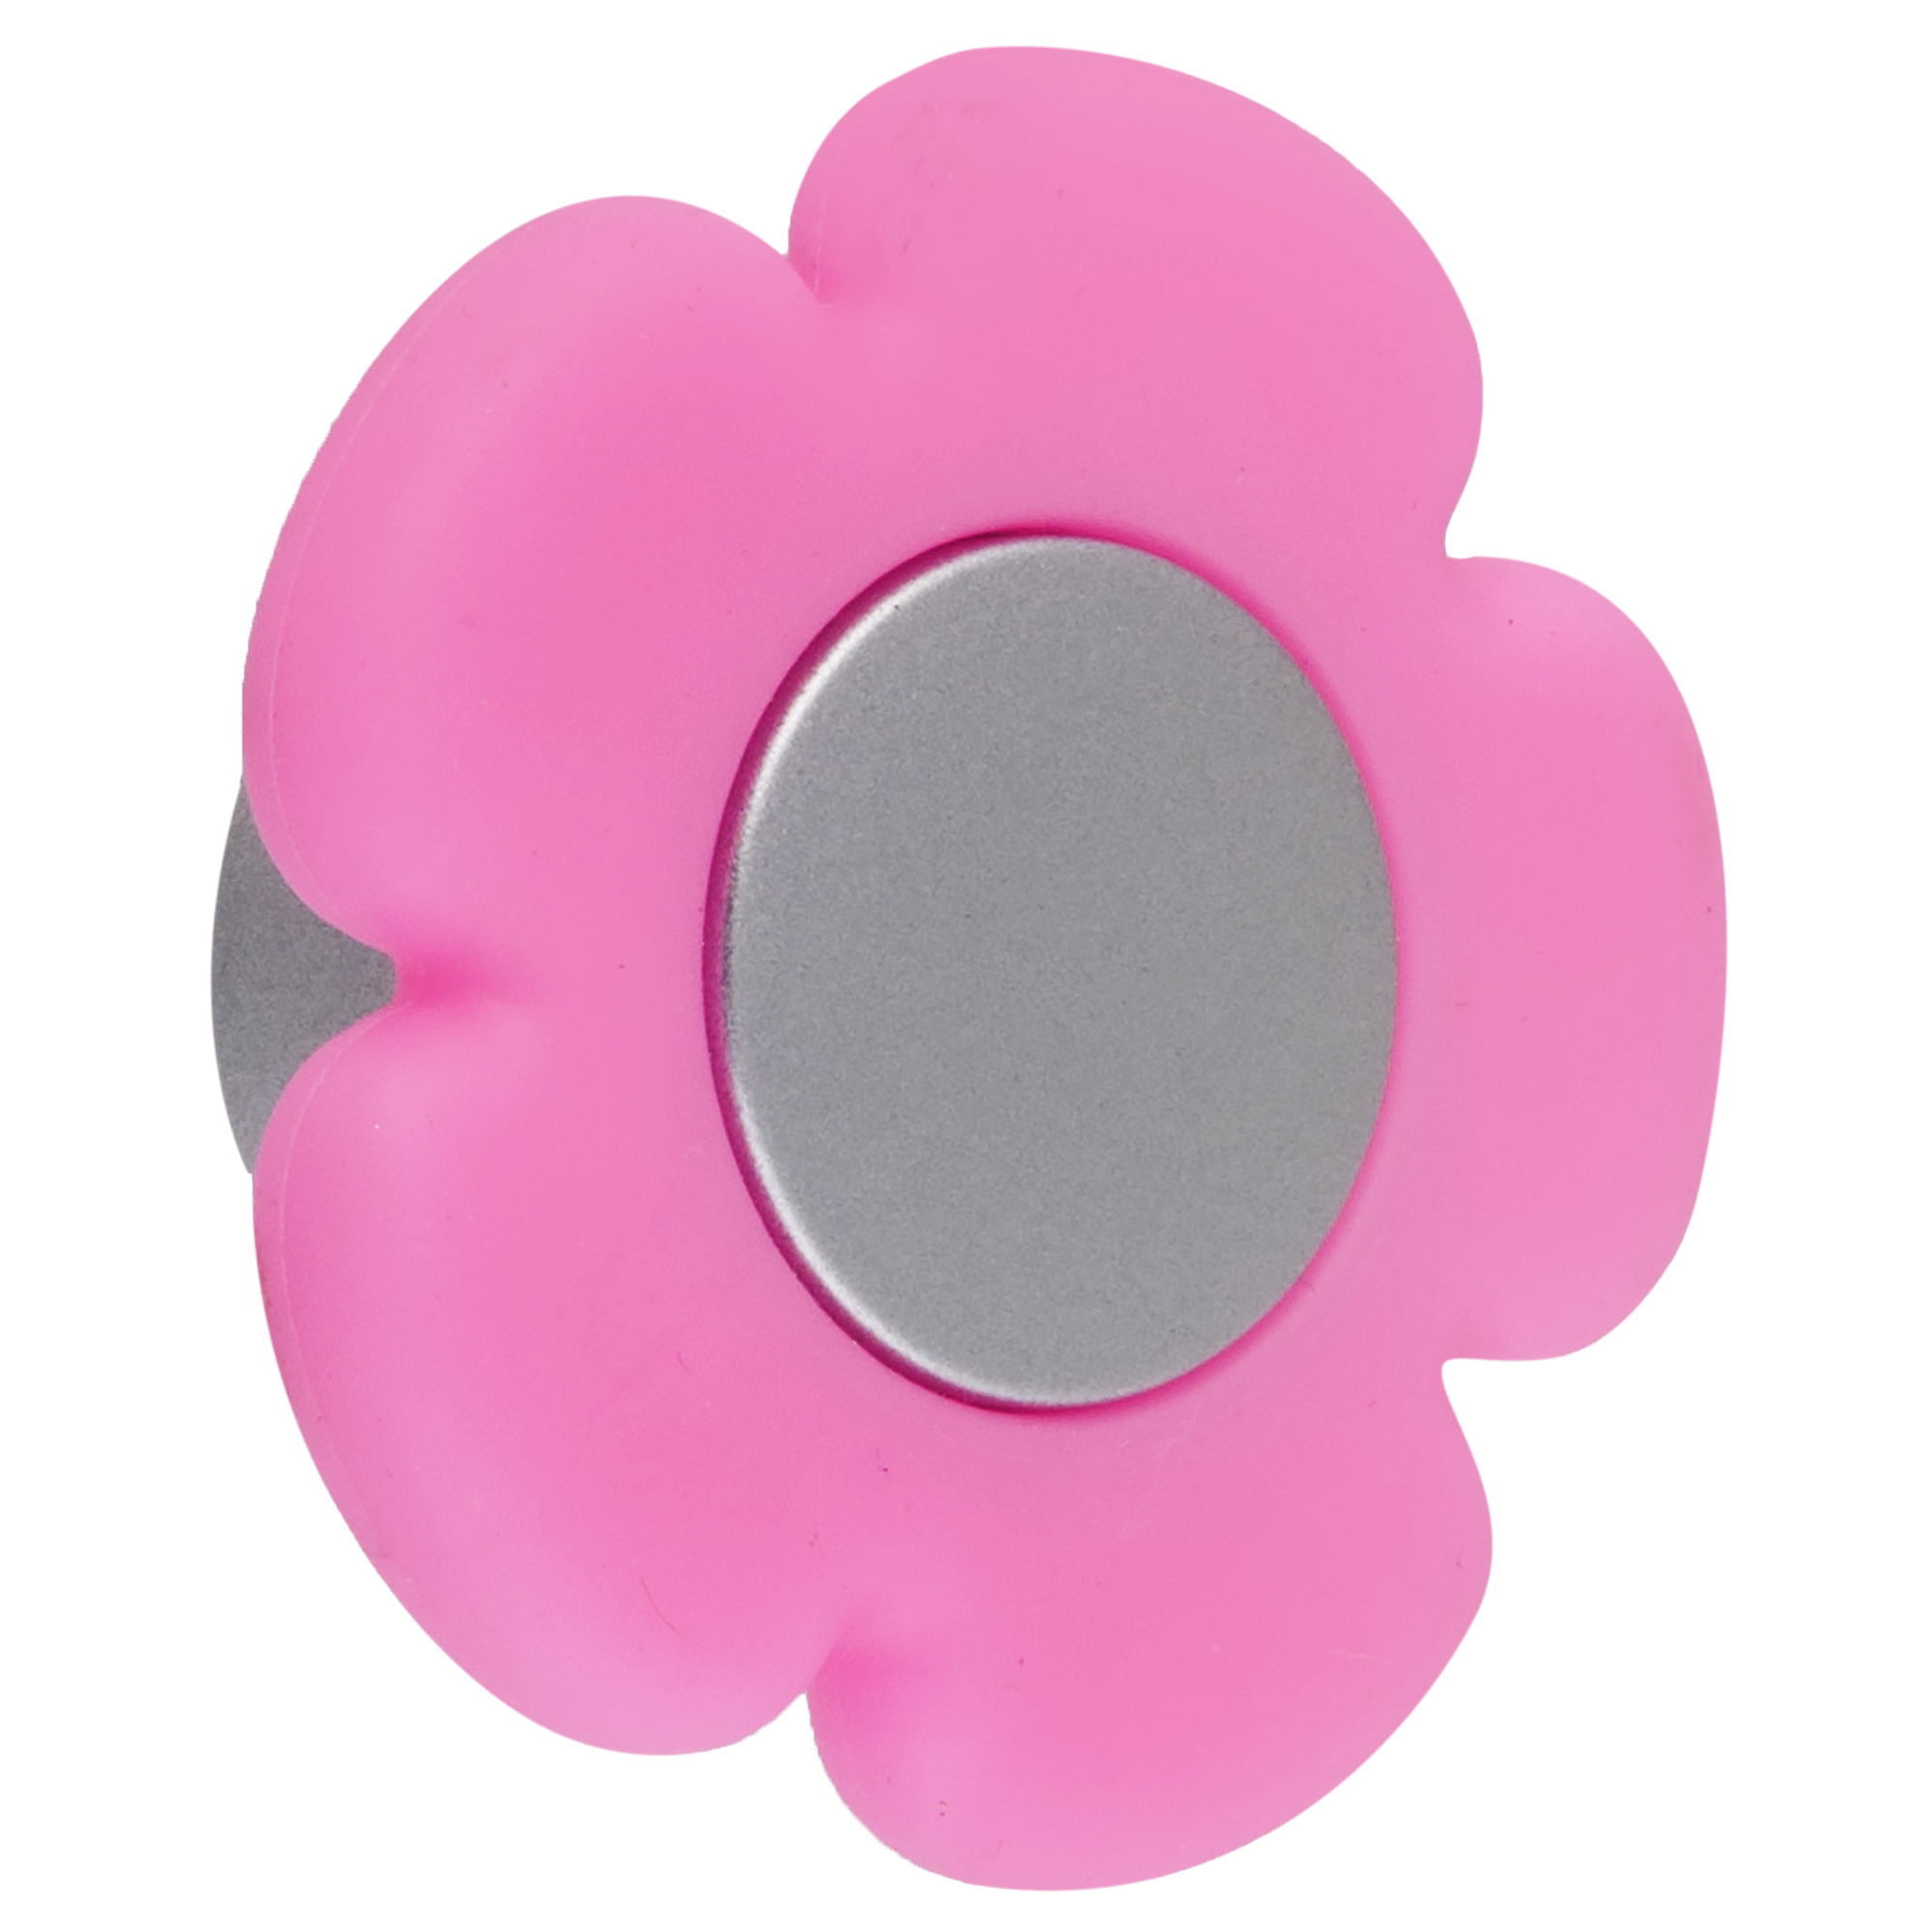  кнопка В-052 000 цвет сатин/розовый  –  по низкой .